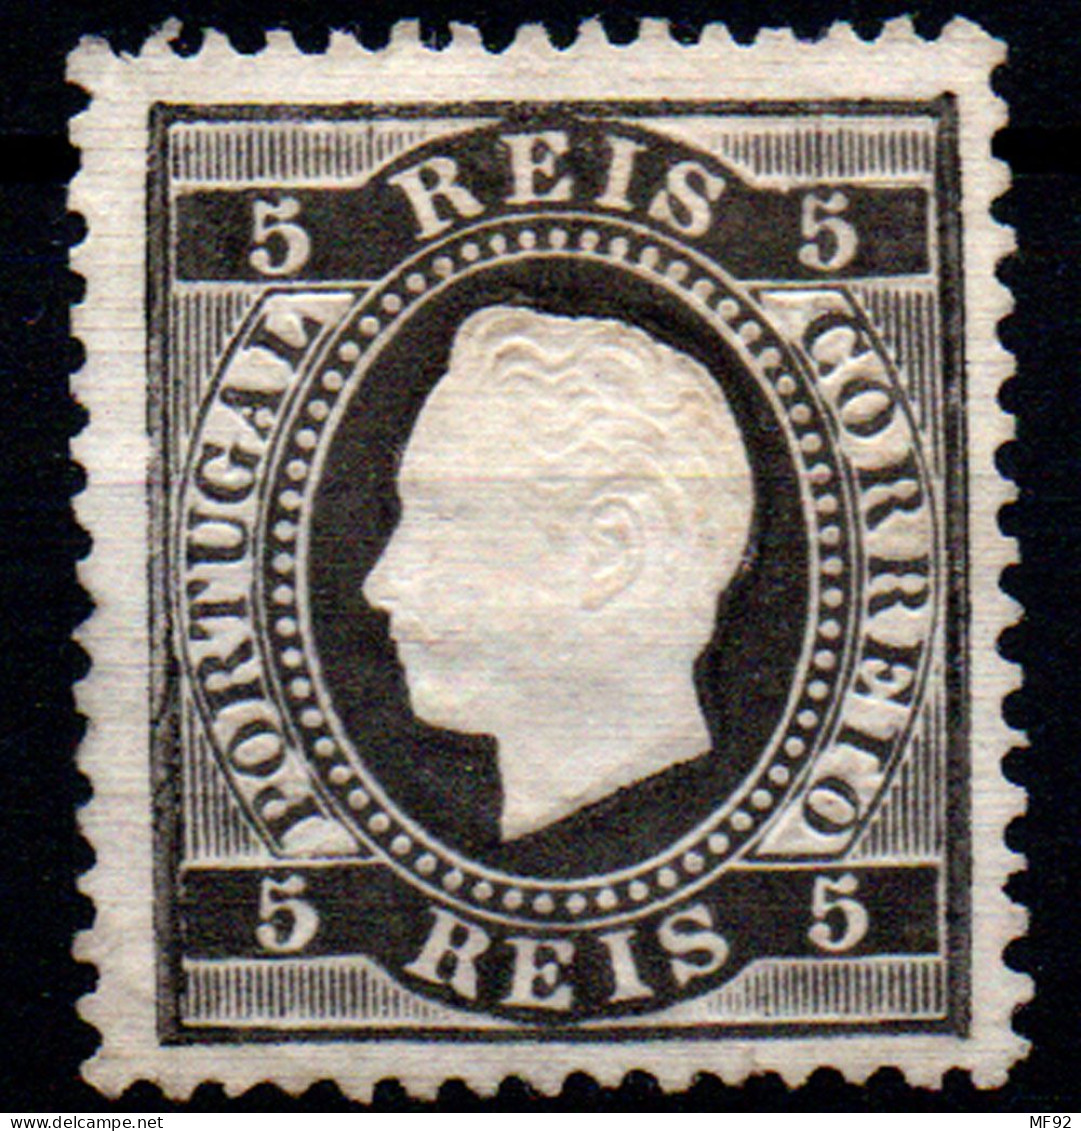 Portugal Nº 35. Año 1870/80 - Unused Stamps